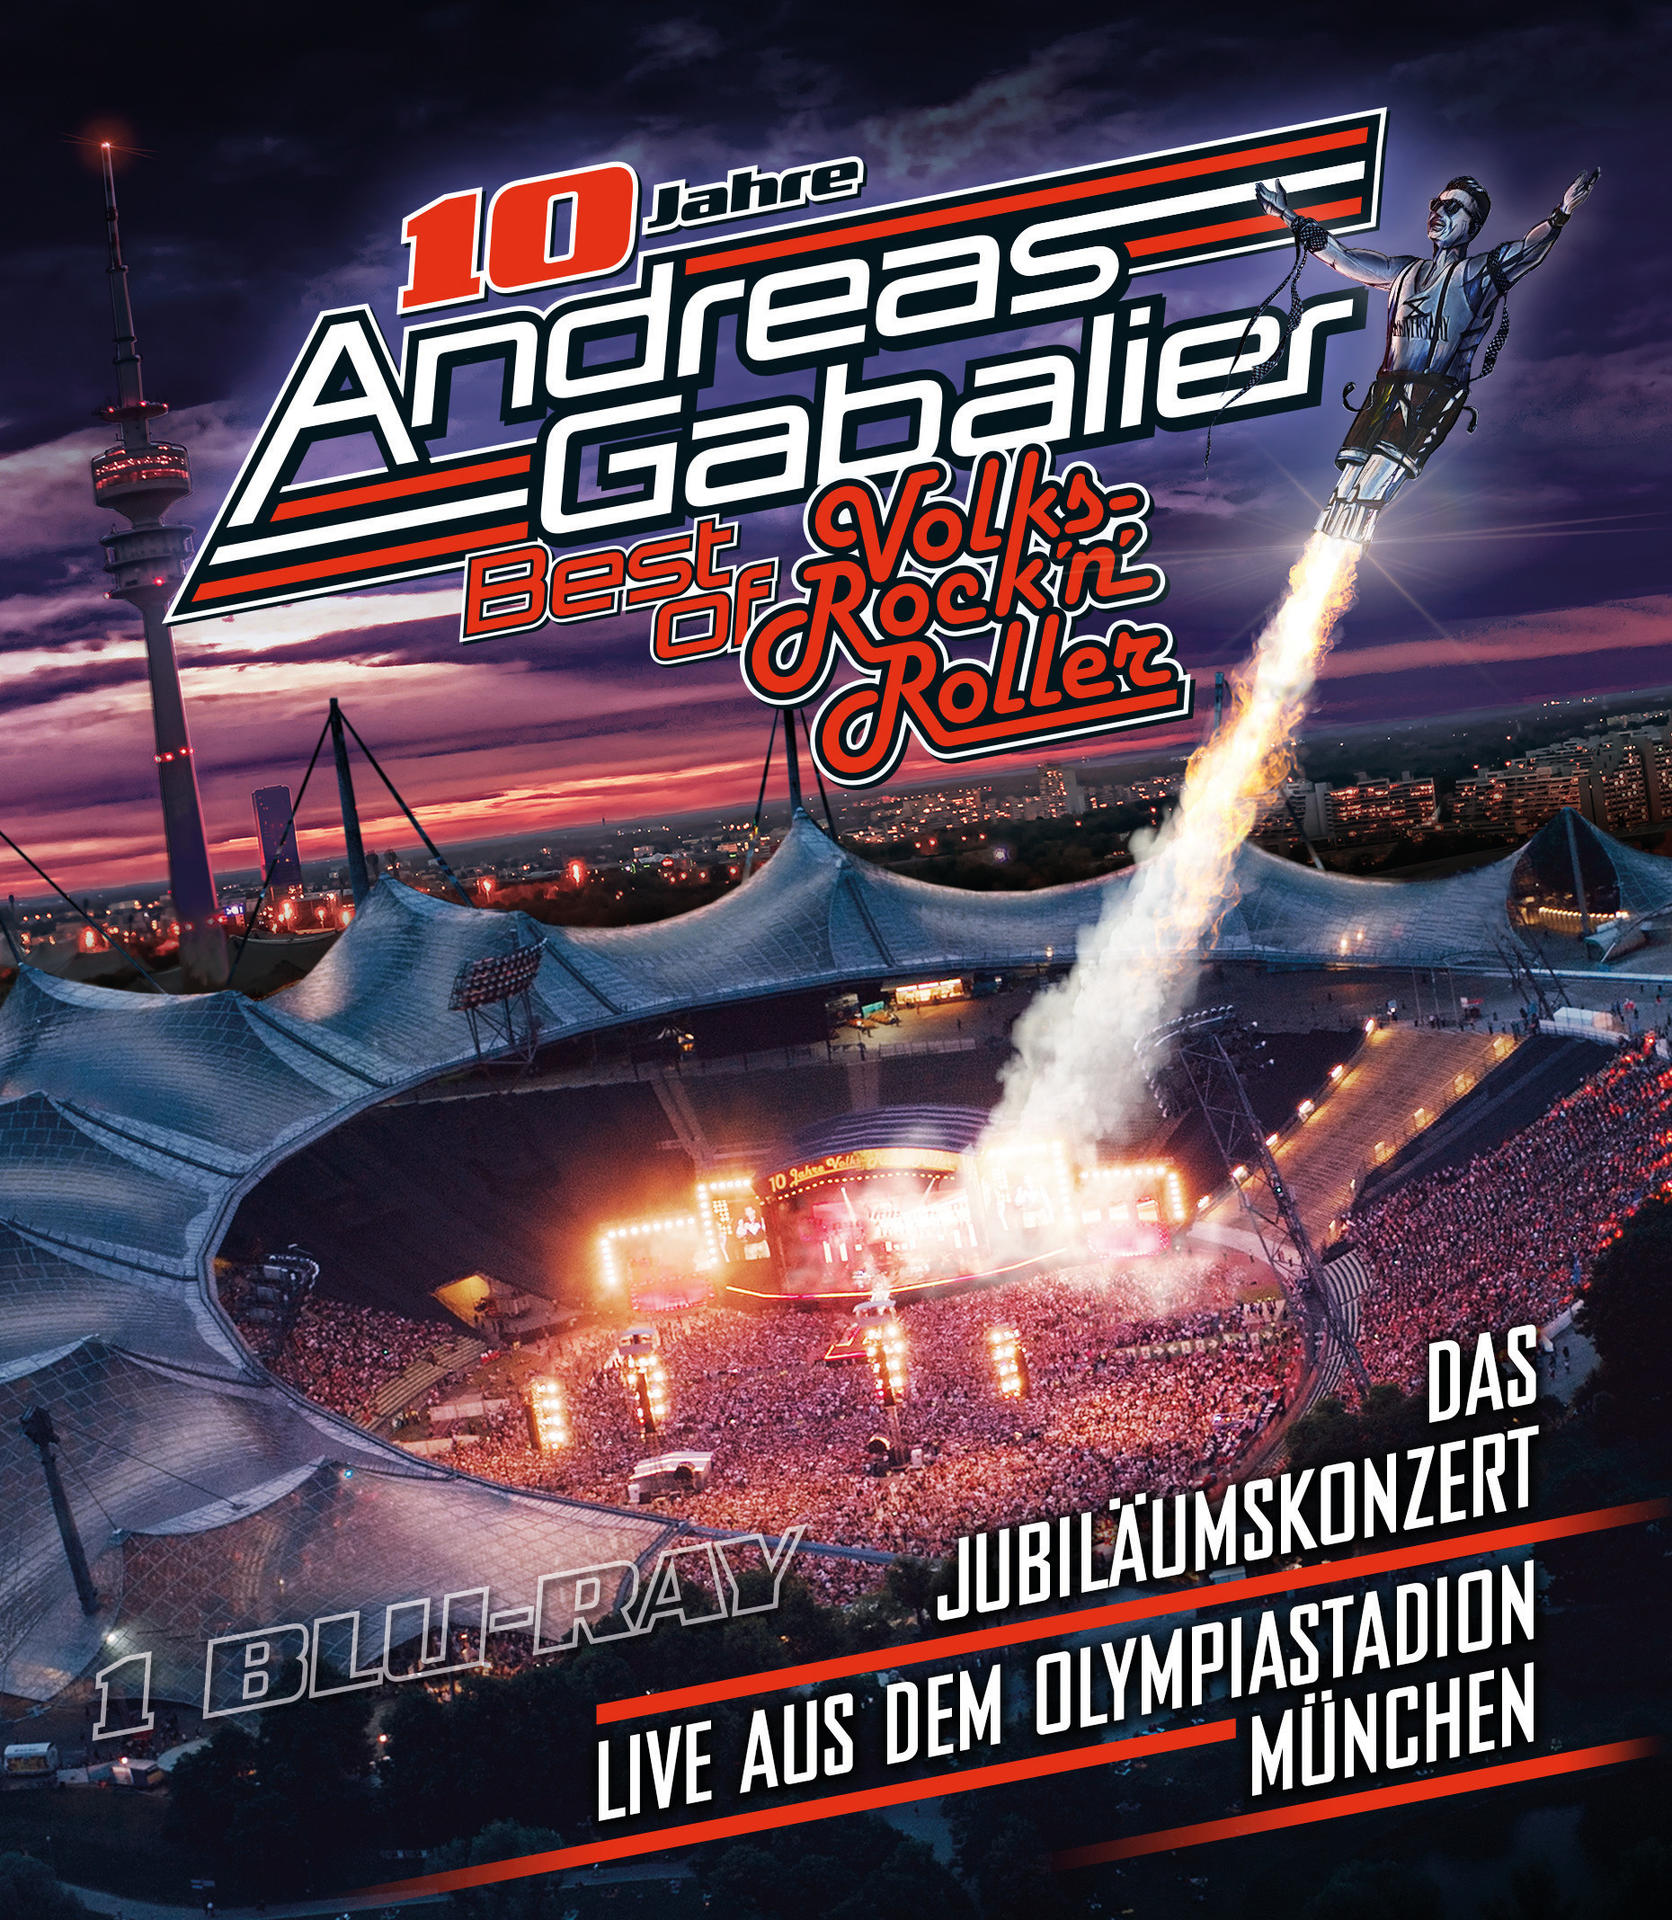 of Olympiastadion aus Das - live (Blu-ray) Jubiläumskonzert Volks-Rock’n’Roller Gabalier Andreas München Best dem – - in